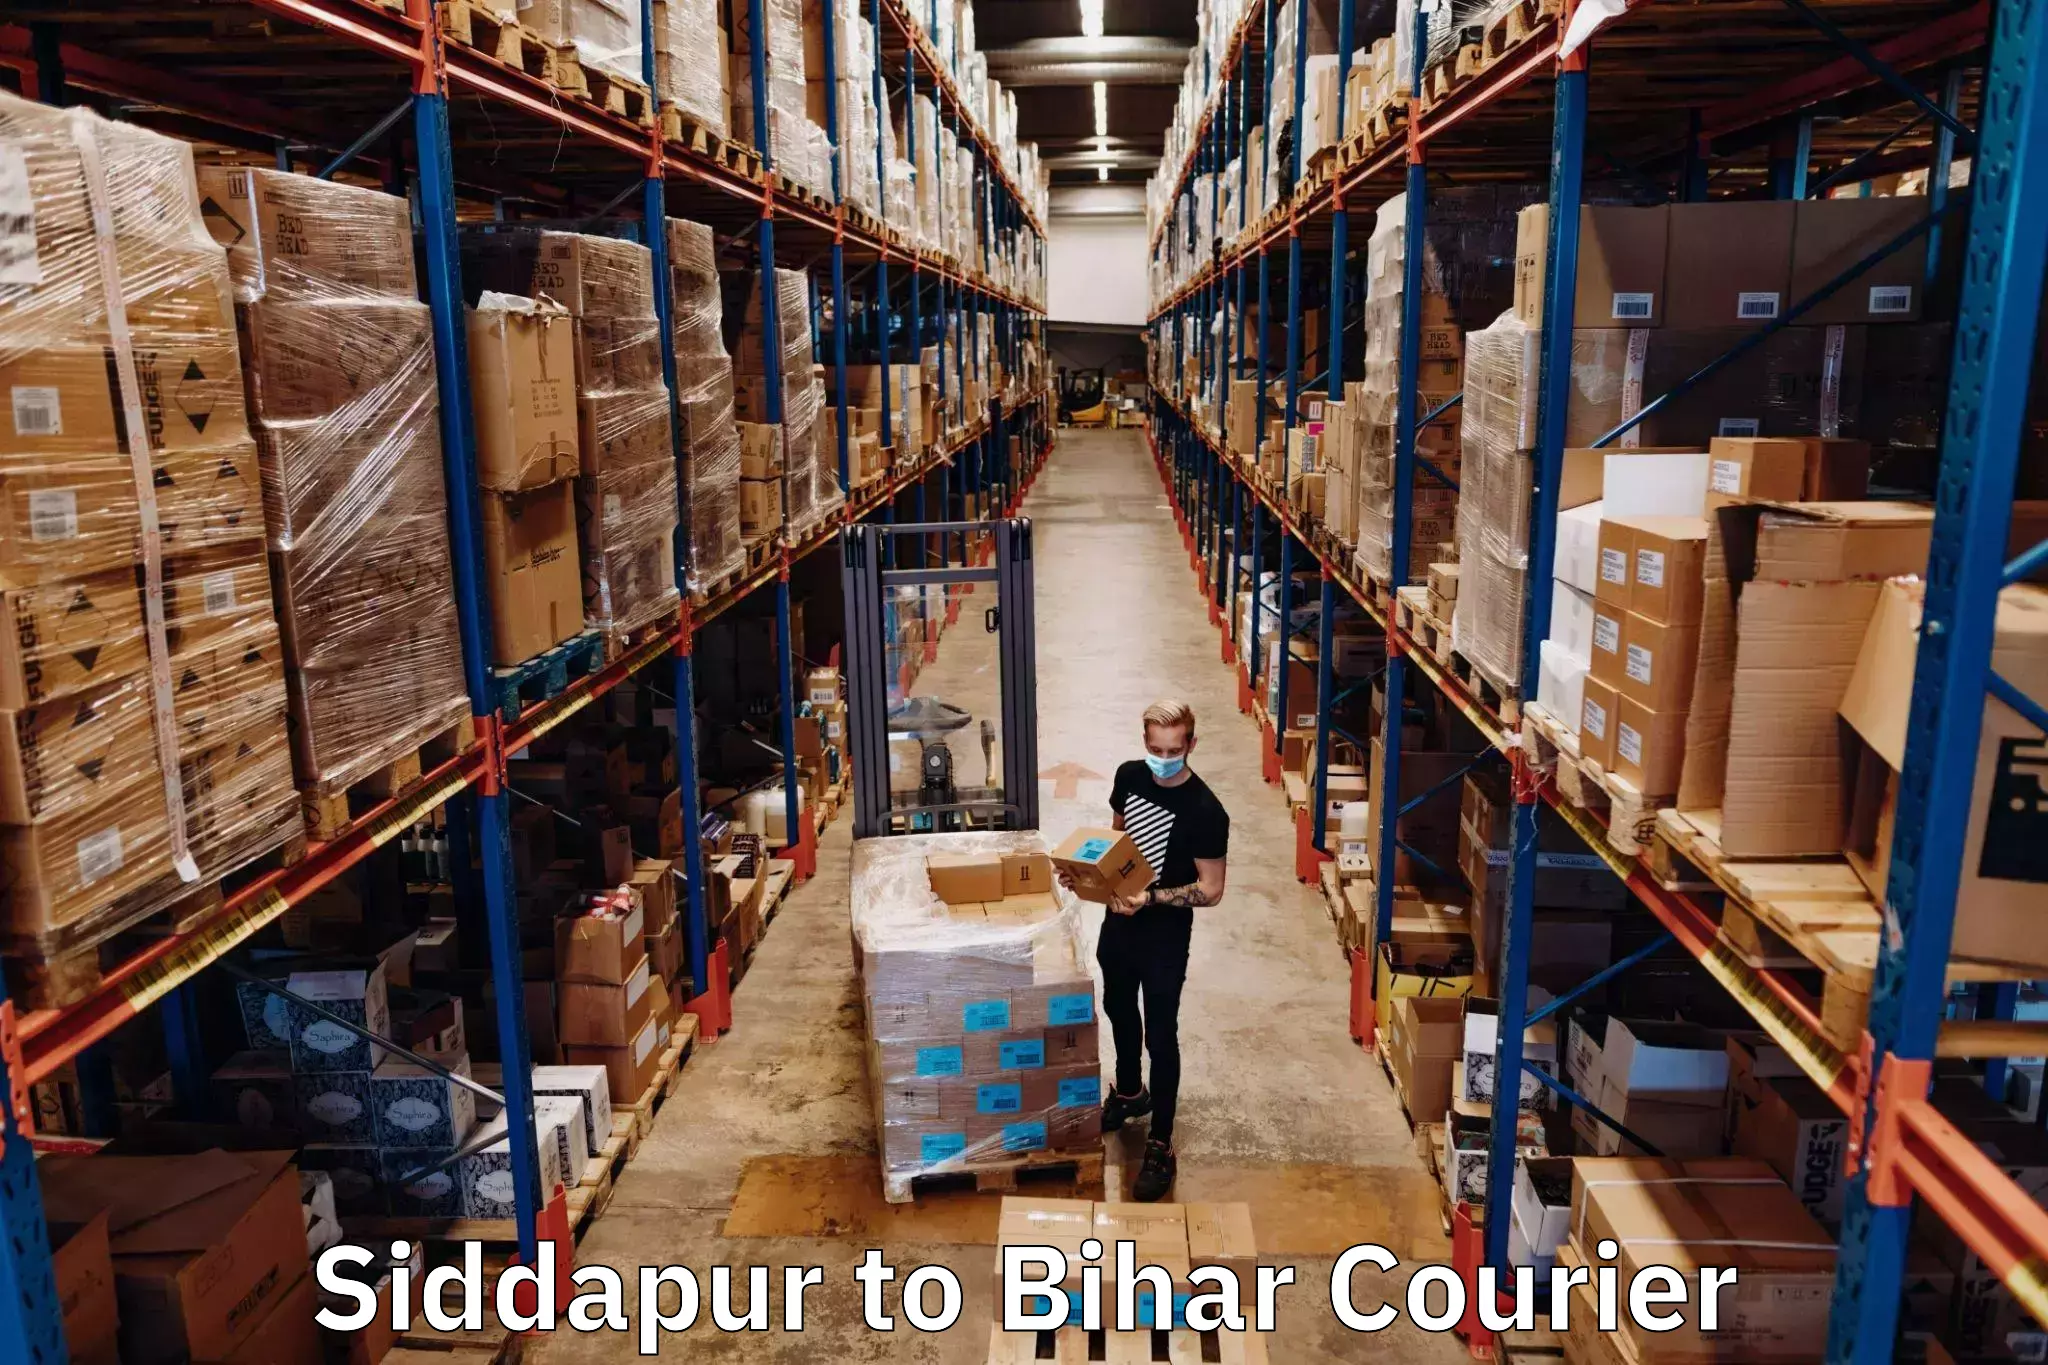 Premium courier services Siddapur to Bhagalpur